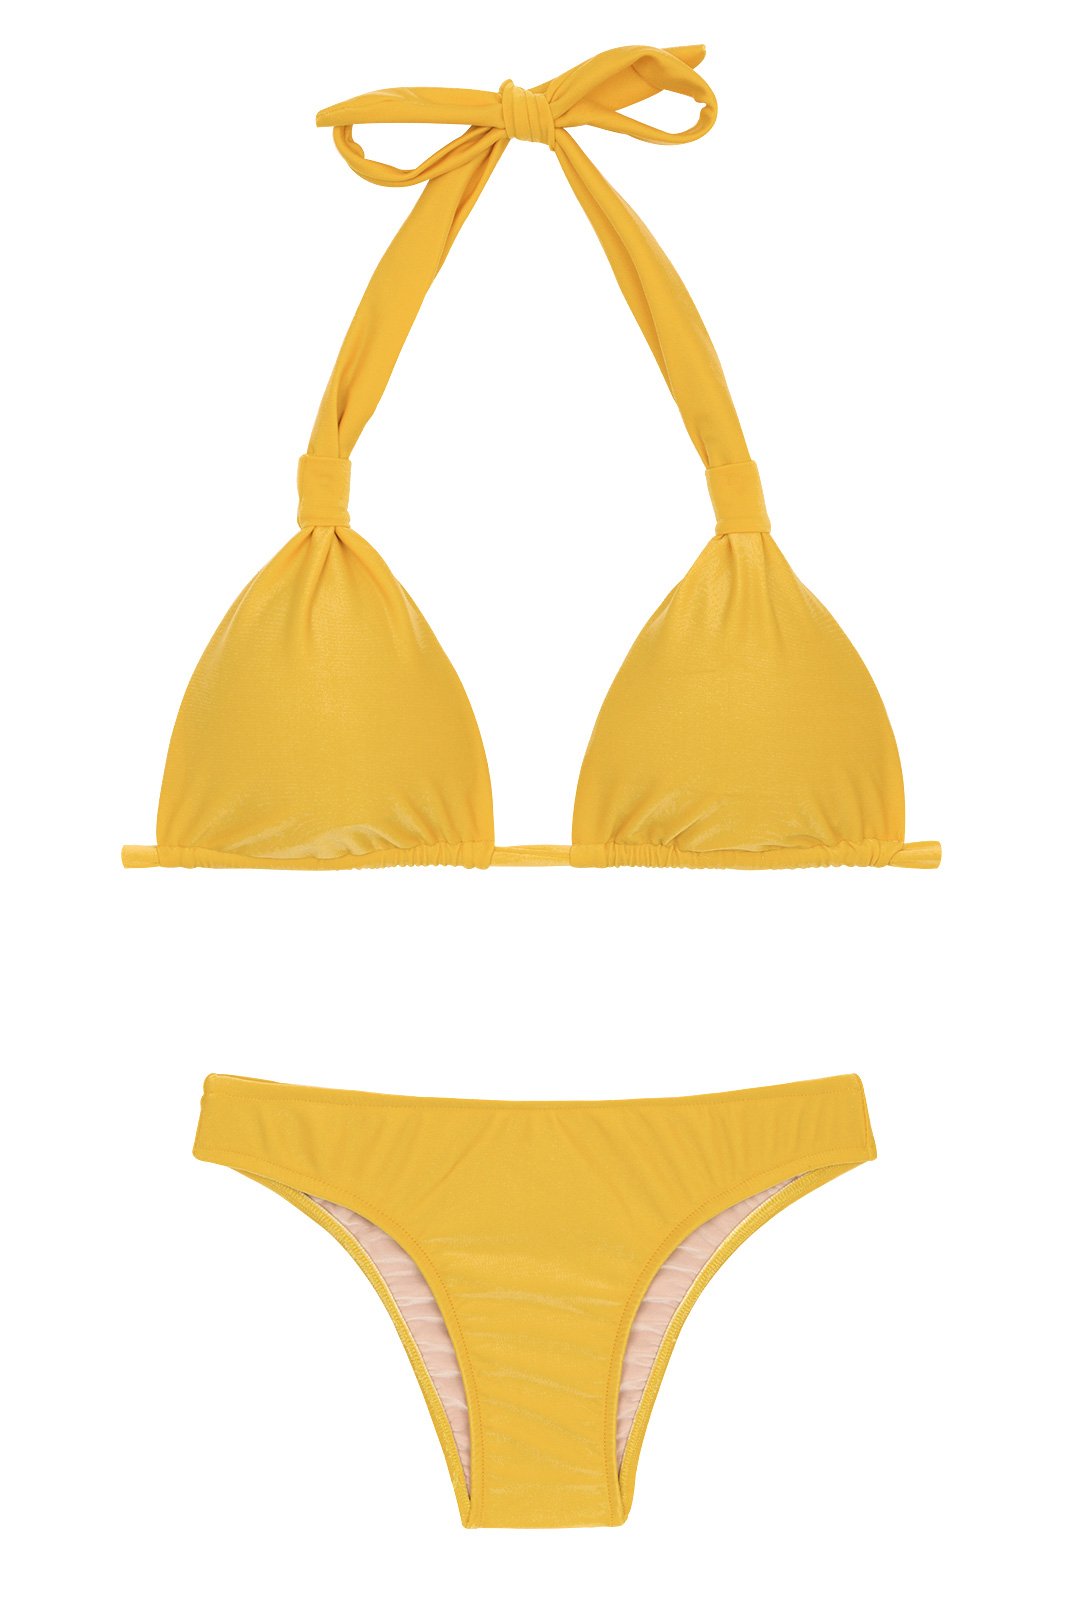 Two Piece Swimwear Yellow Triangle Halter Bikini - Tempero Cortinao